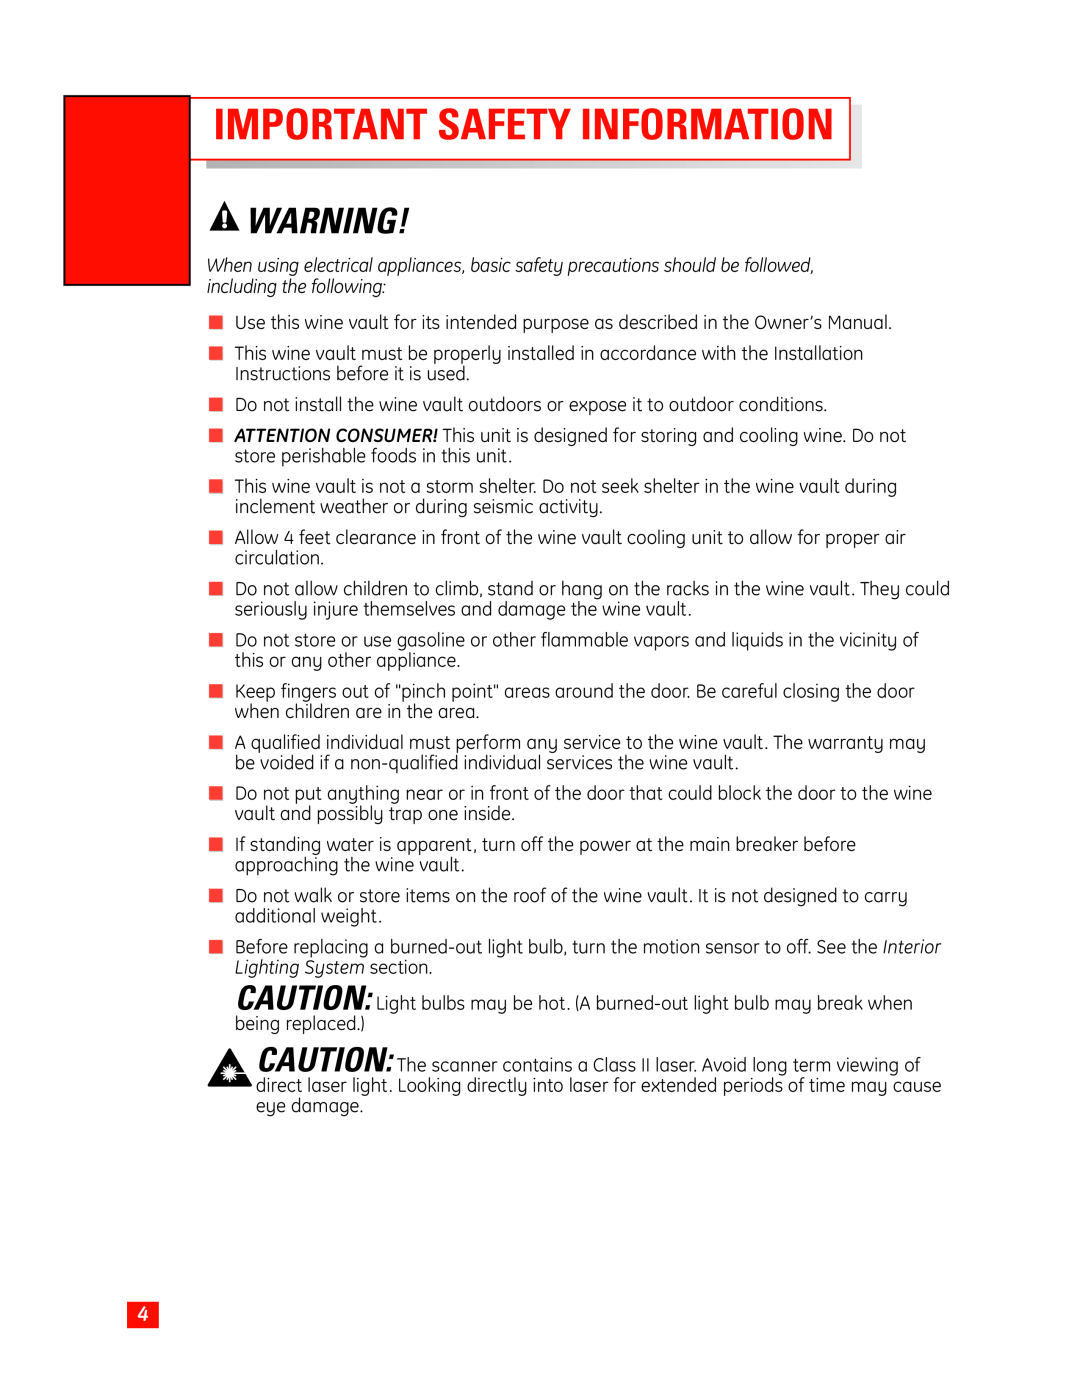 GE Monogram Wine Vault owner manual Important Safety Information 